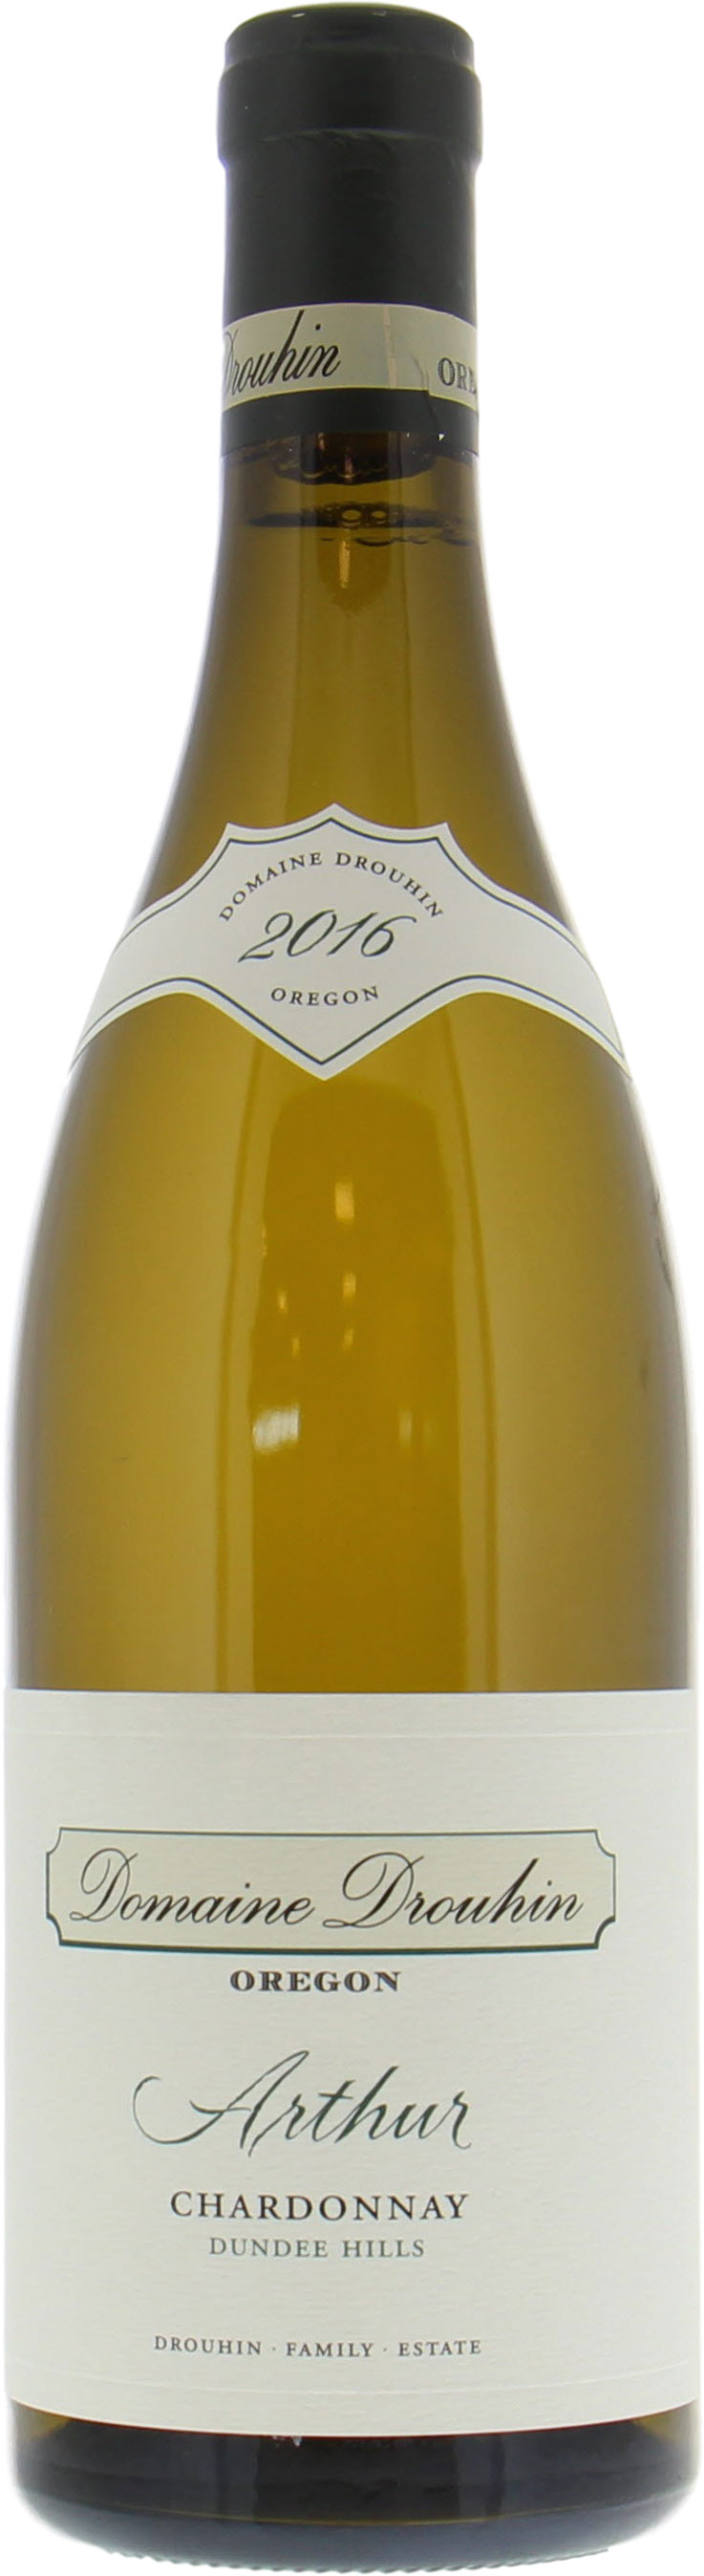 Domaine Drouhin - Arthur Chardonnay 2016 Perfect